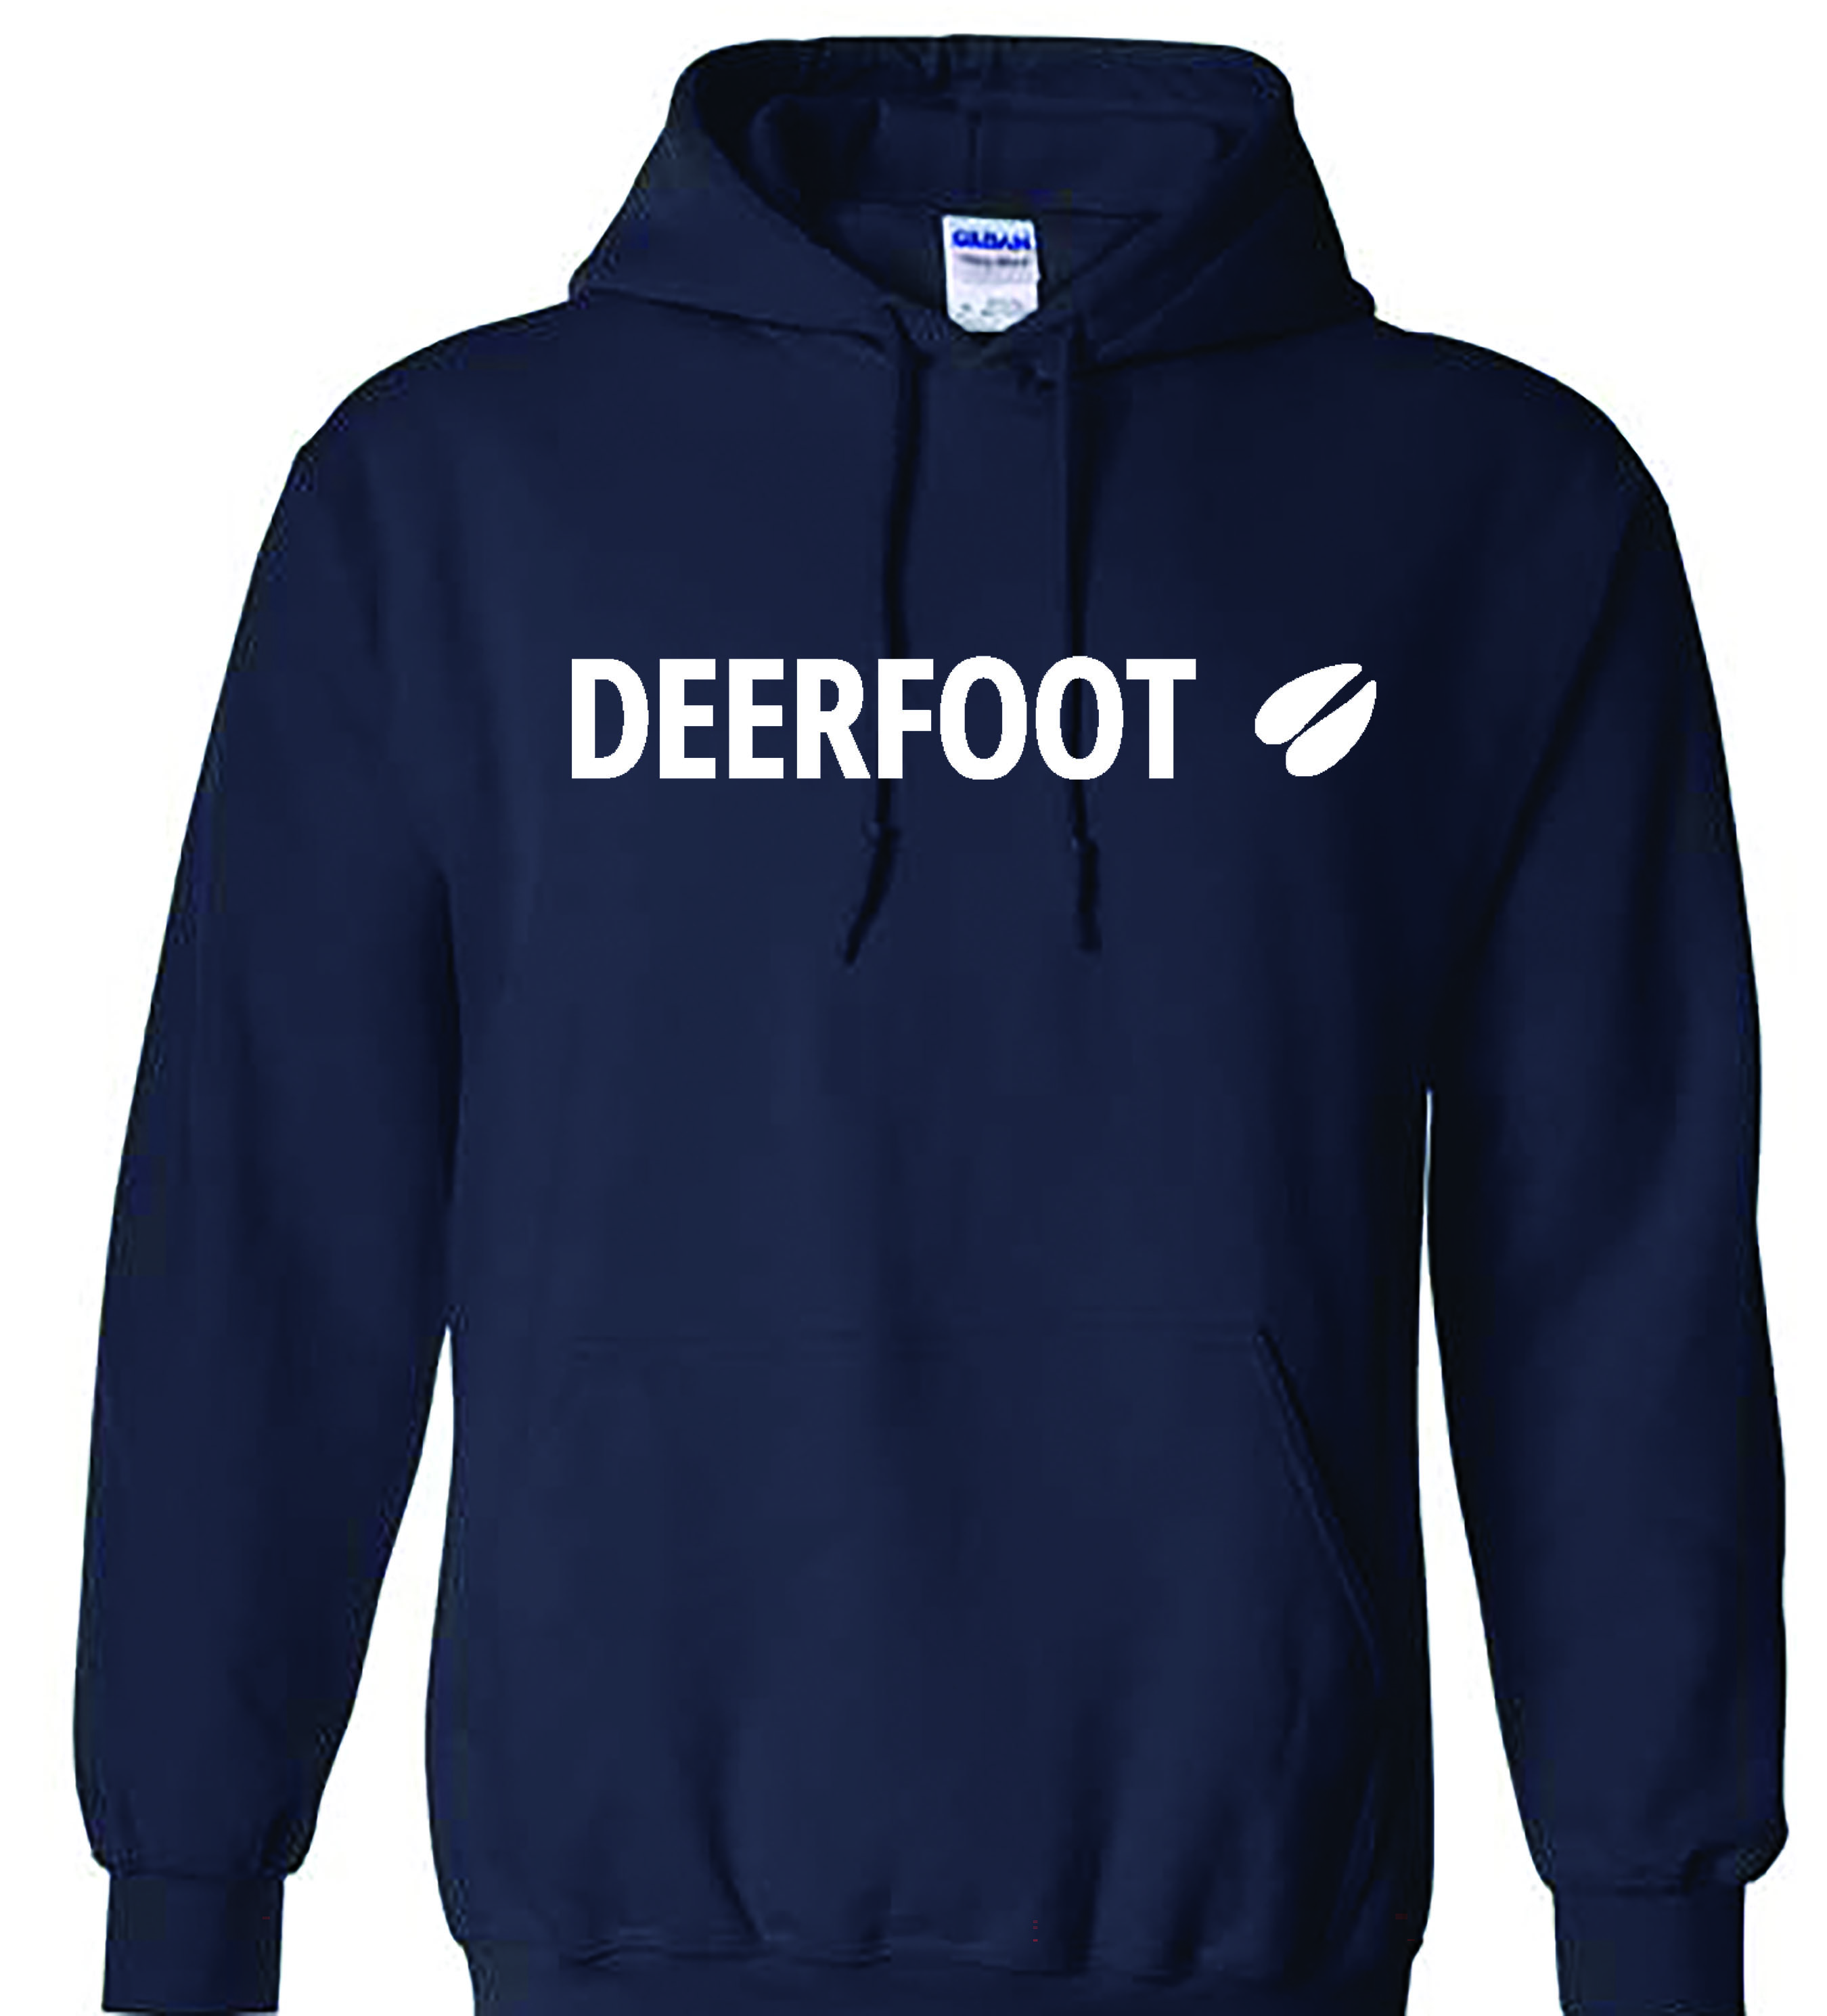 Deerfoot Logo on Navy Hoodie